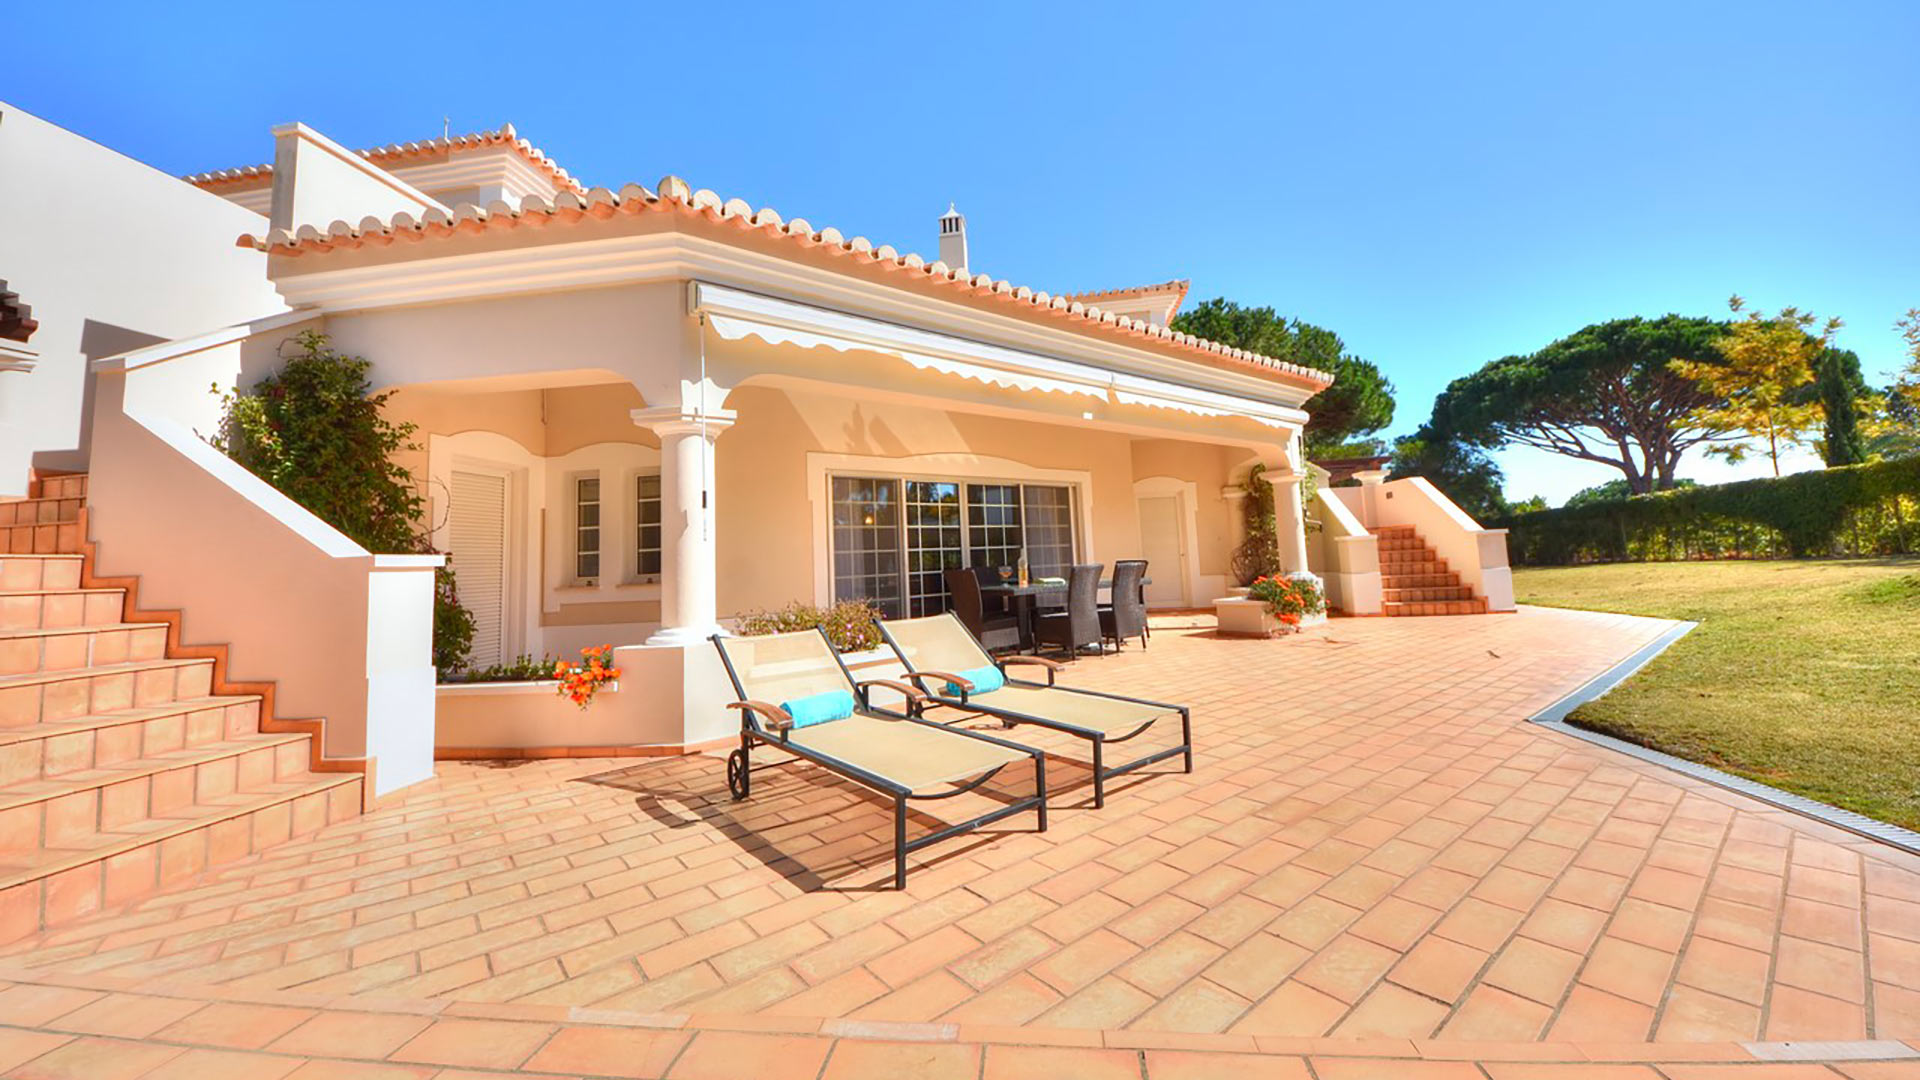 Villa Villa Aneth, Rental in Algarve